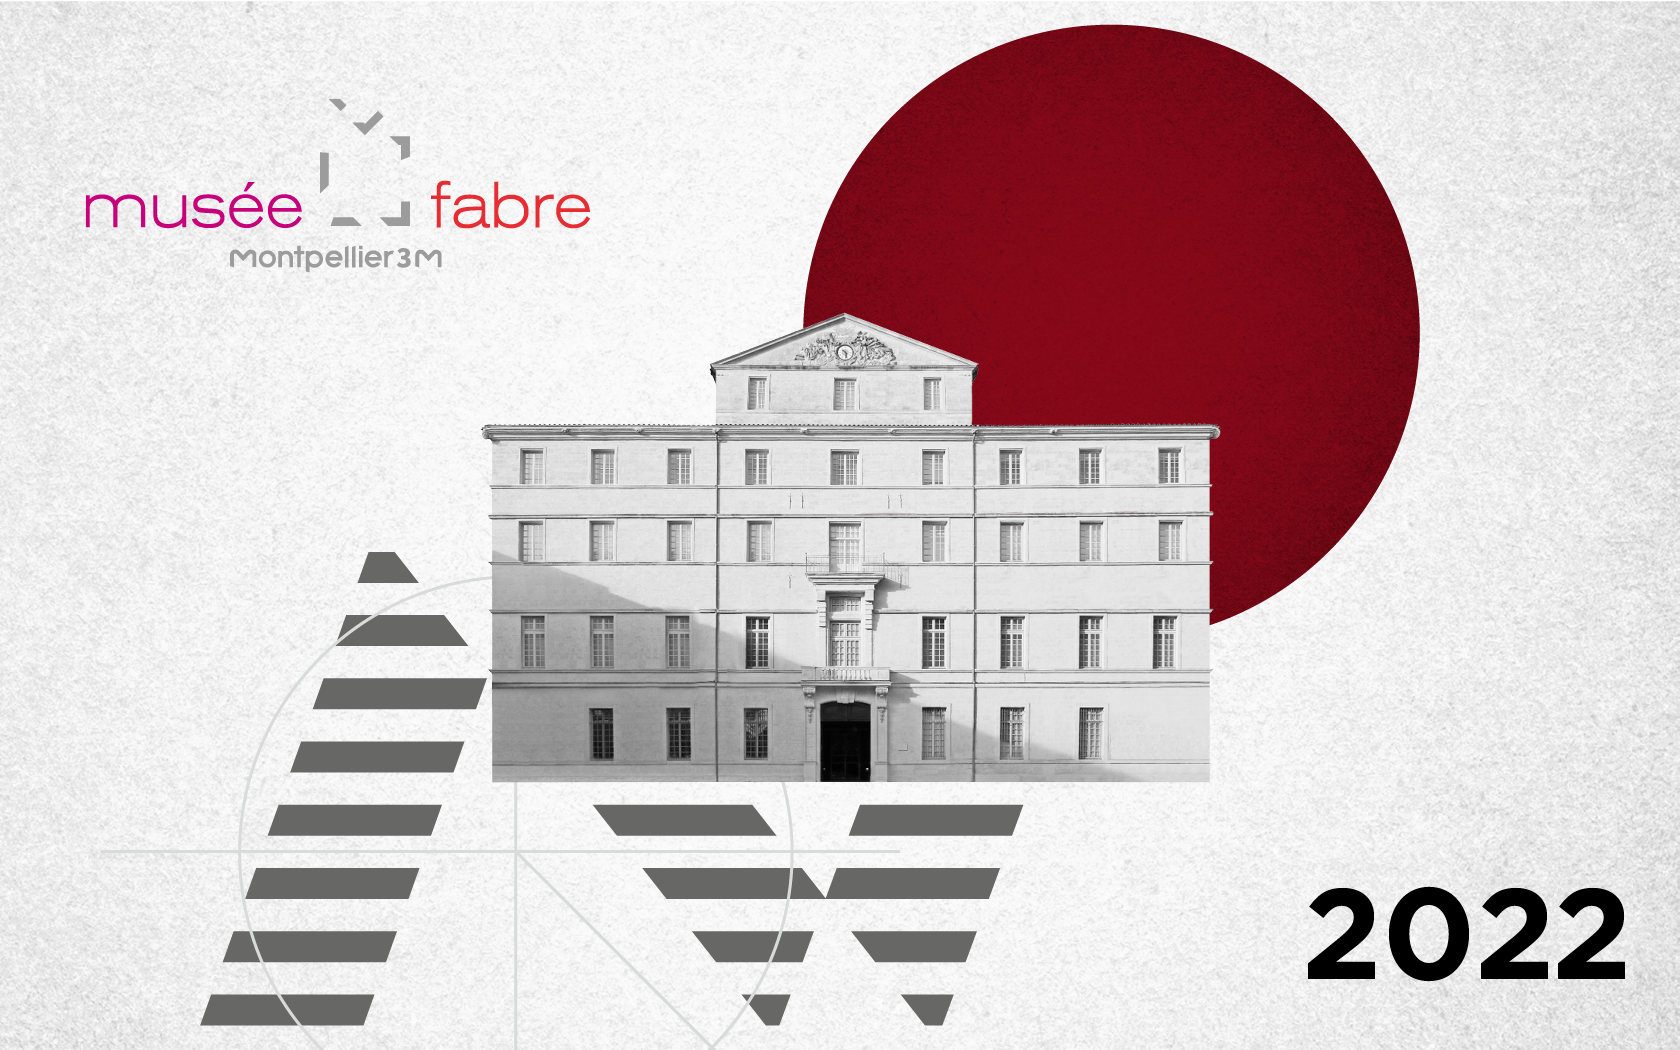 Les équipes du musée Fabre vous adressent leurs meilleurs vœux pour 2022